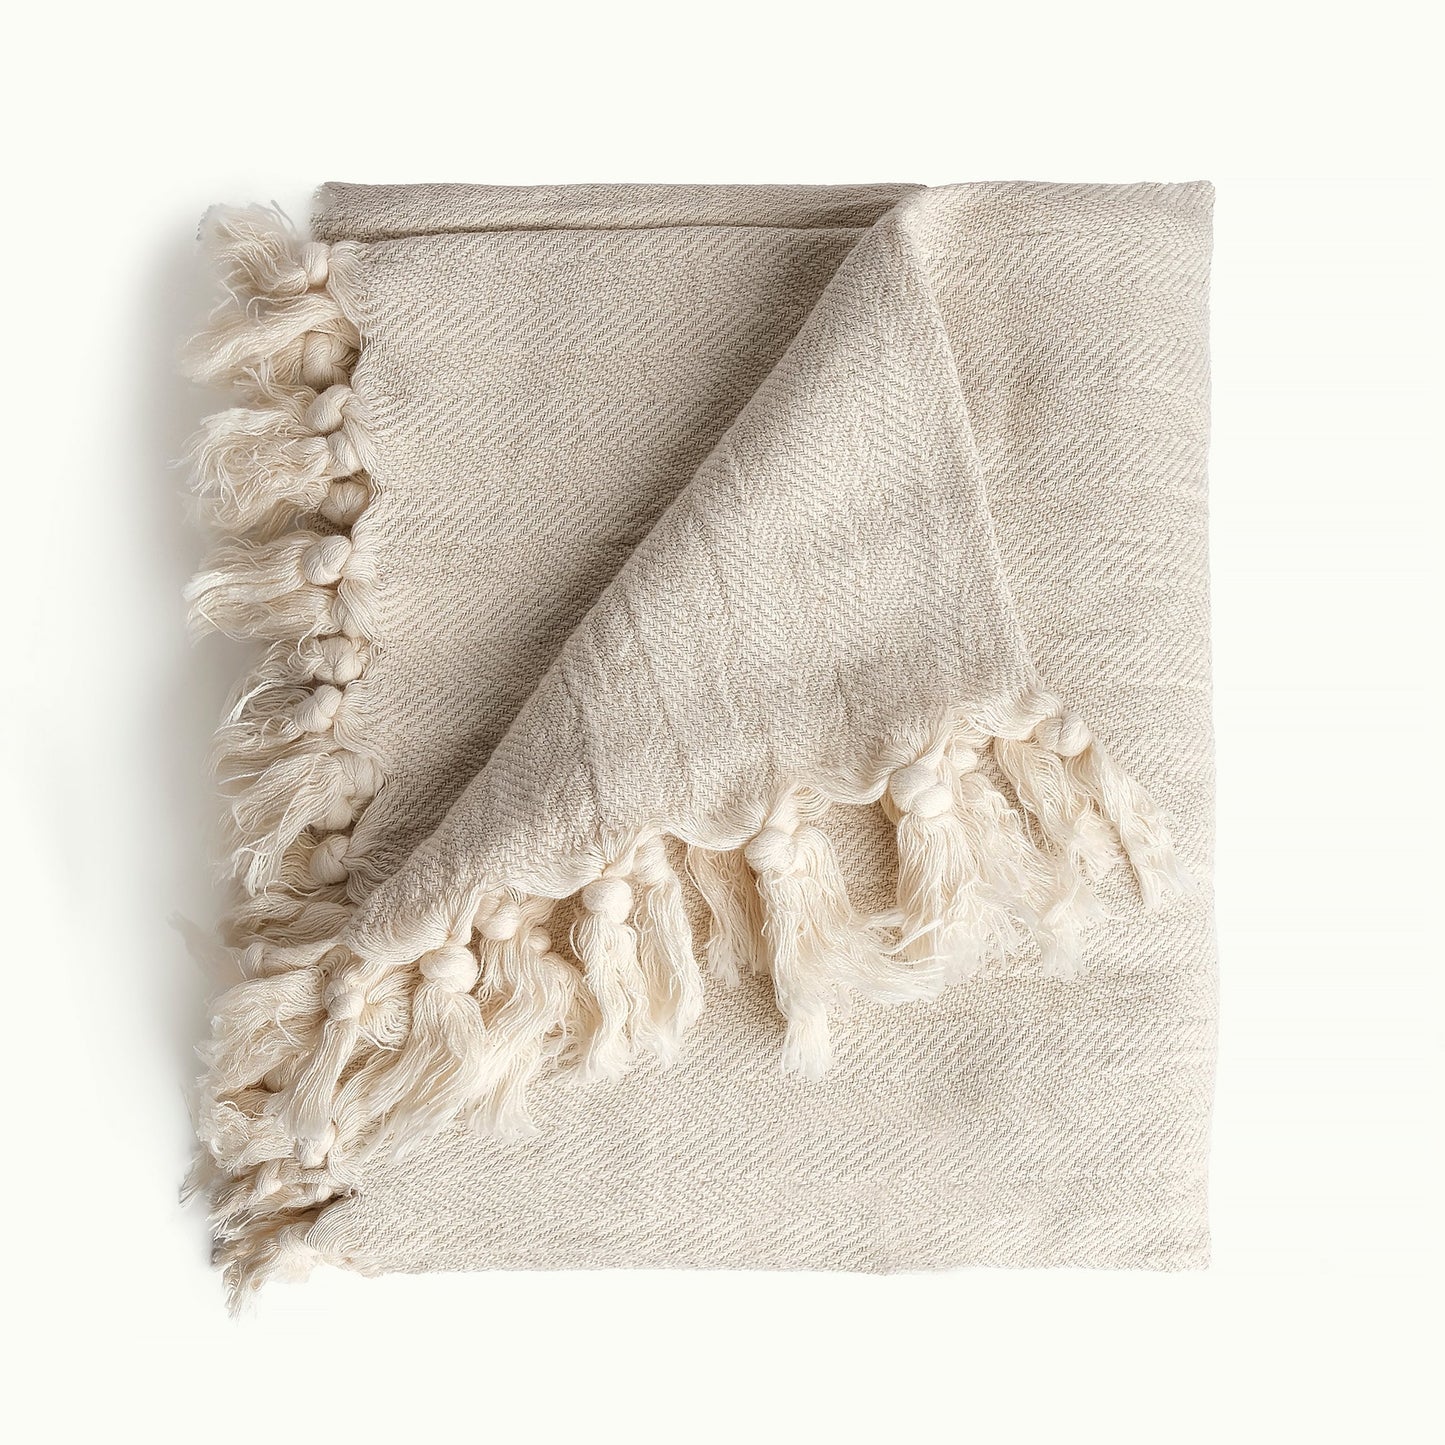 Plaid (tæppe) vævet i økologisk bomuld. Bæredygtig og Fair Trade fra Afghanistan